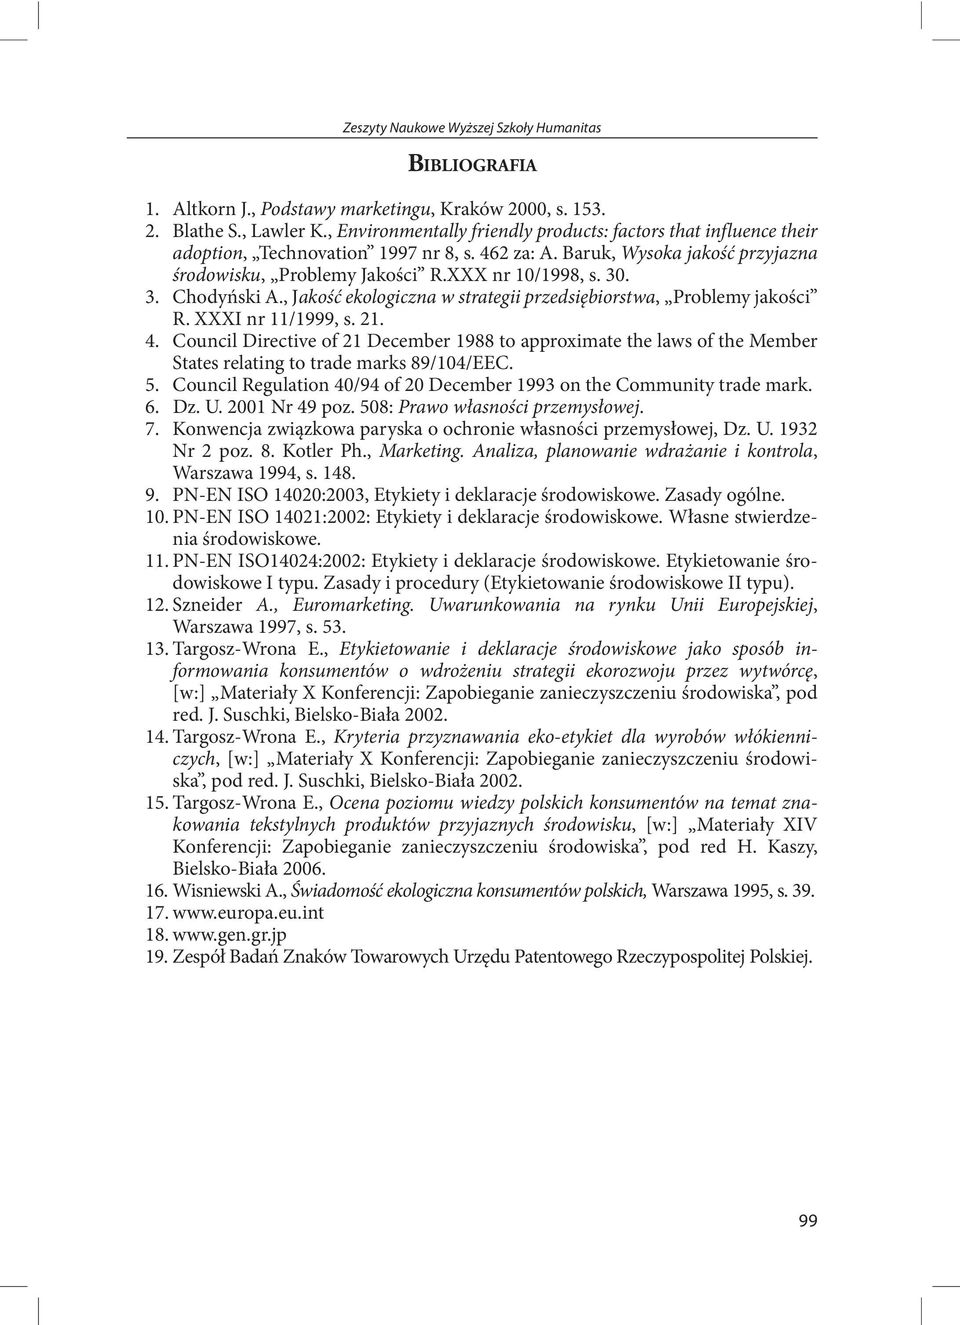 3. Chodyński A., Jakość ekologiczna w strategii przedsiębiorstwa, Problemy jakości R. XXXI nr 11/1999, s. 21. 4.